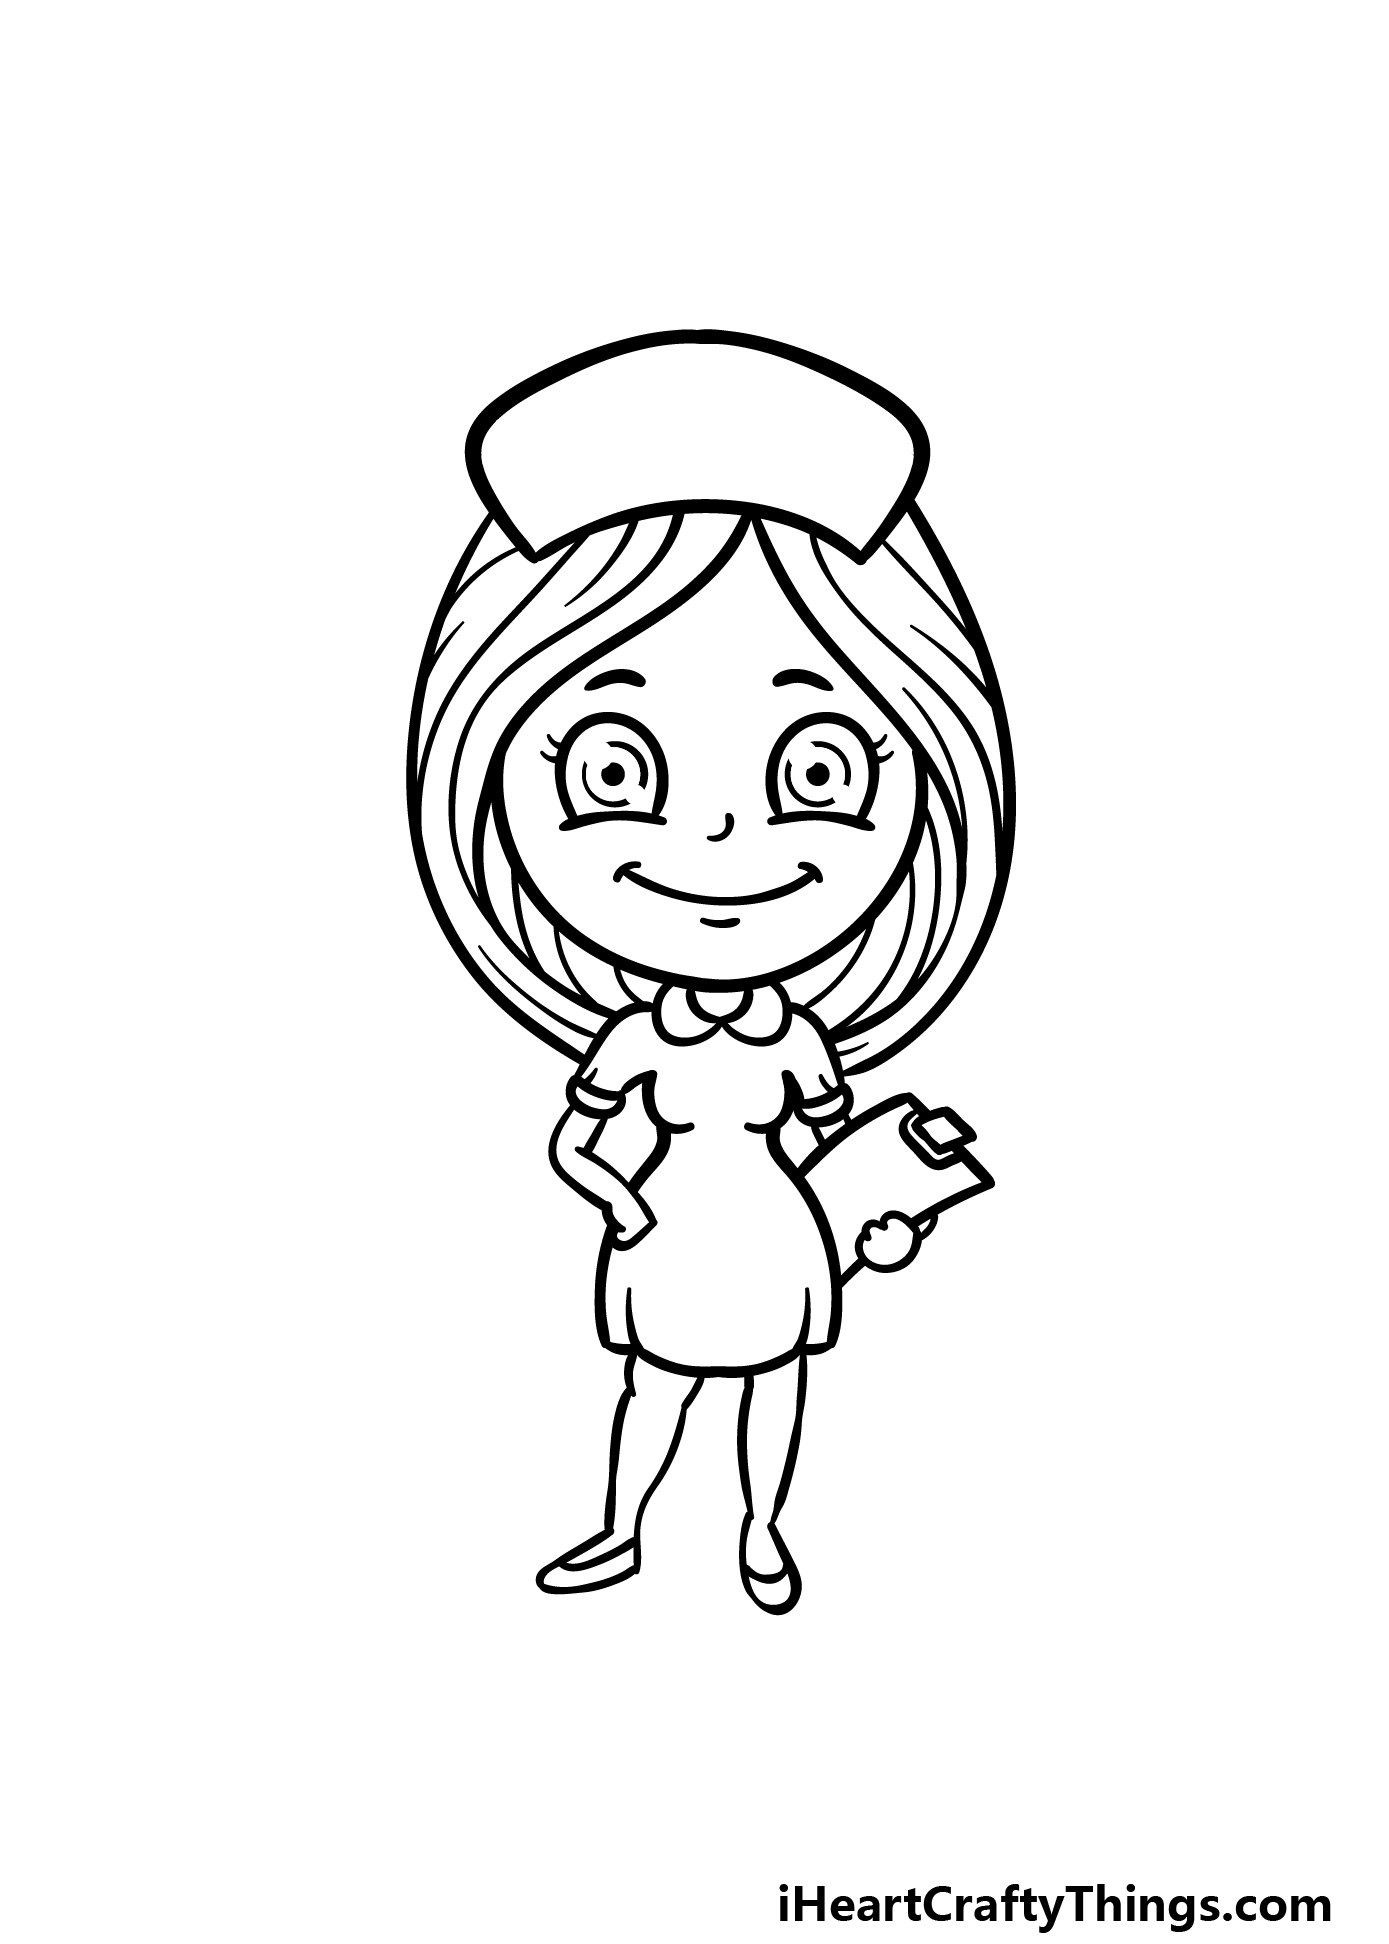 how to draw a cartoon nurse step 6